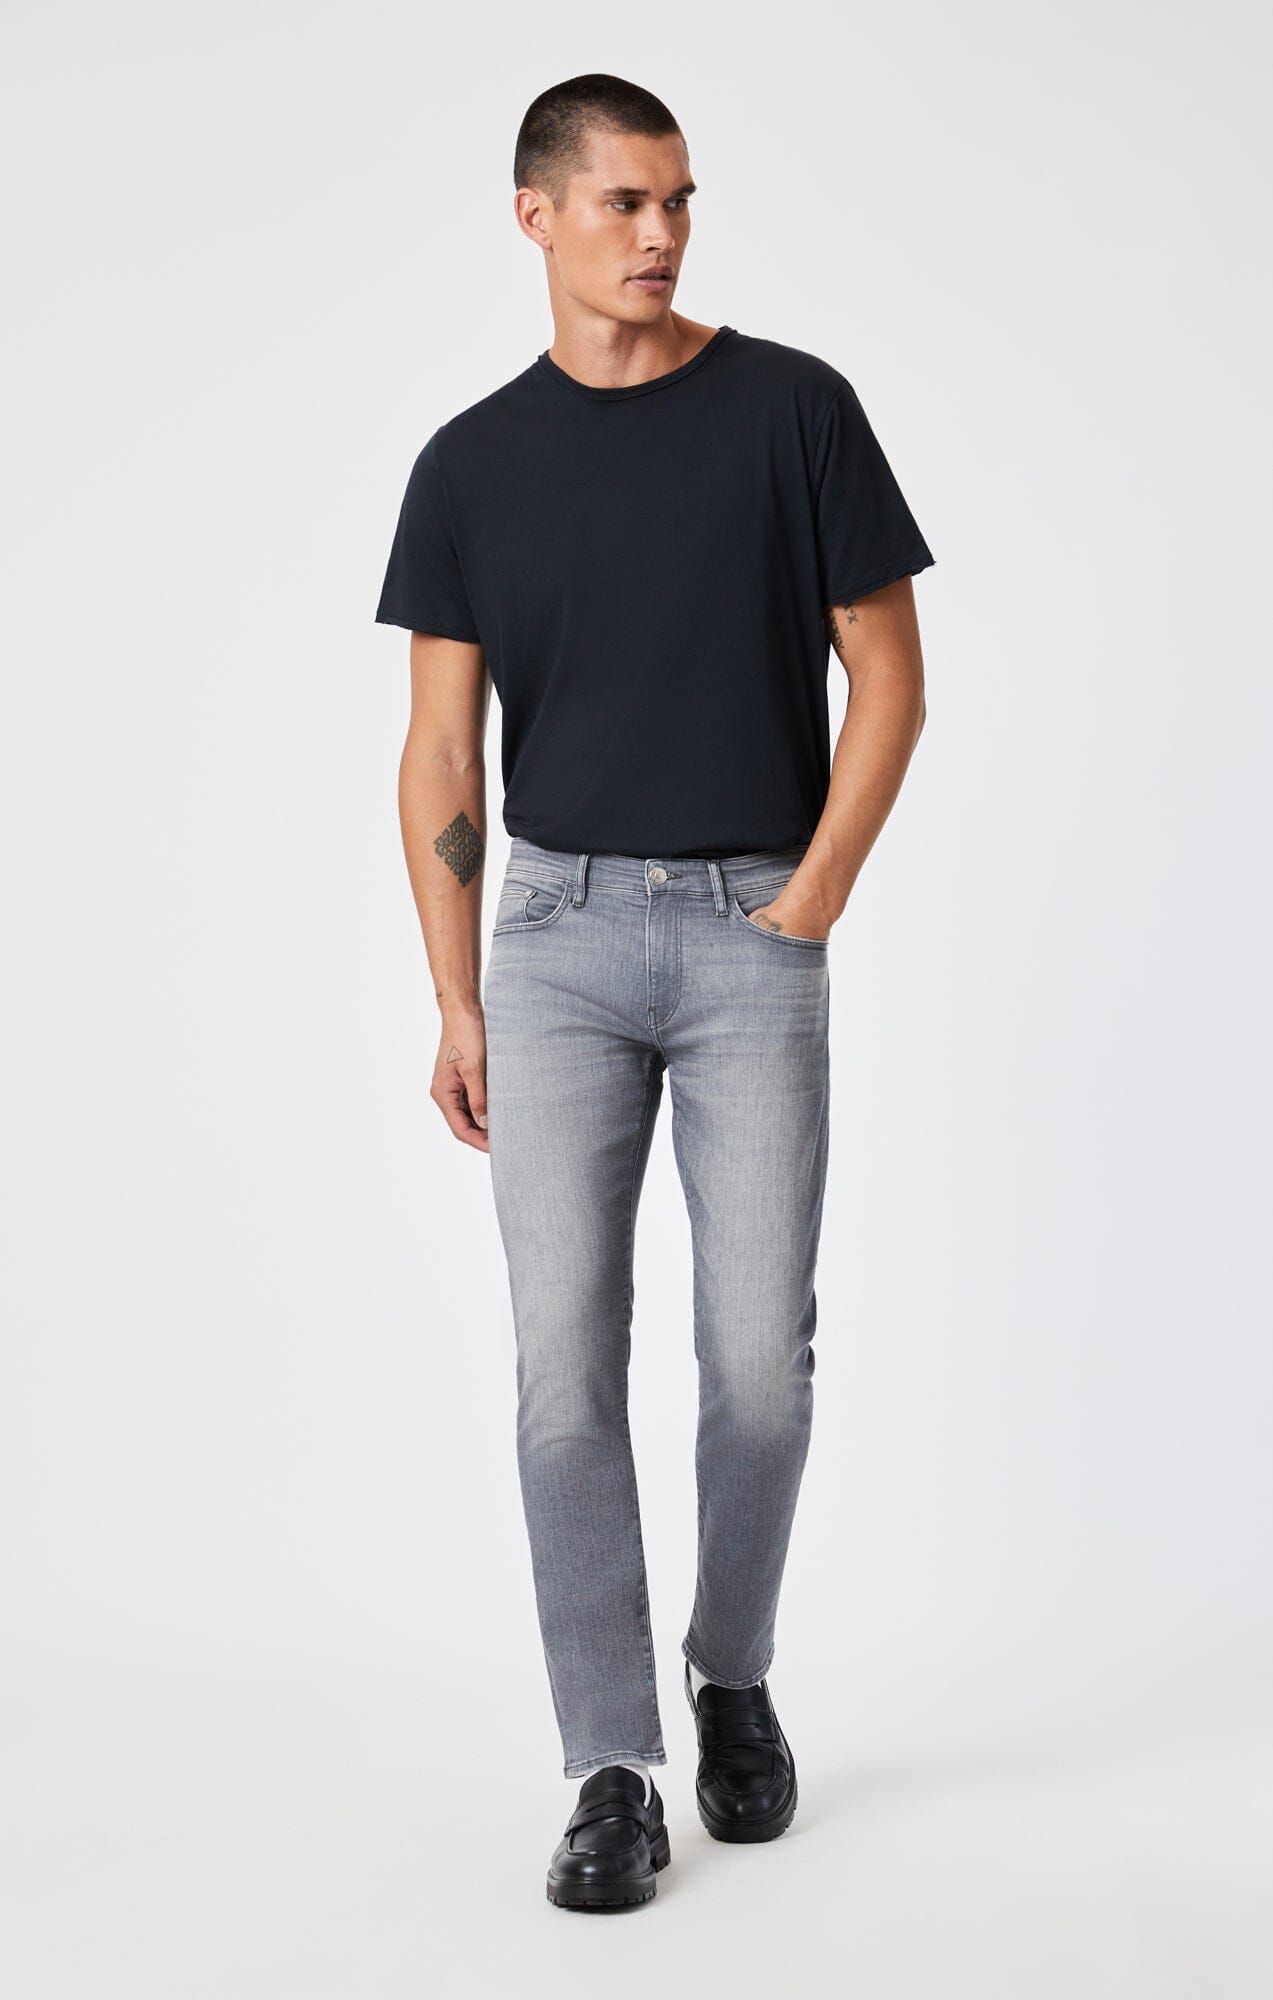 Mens Straight Slim Side Pocket Denim Jeans, Blue at Rs 1400/piece